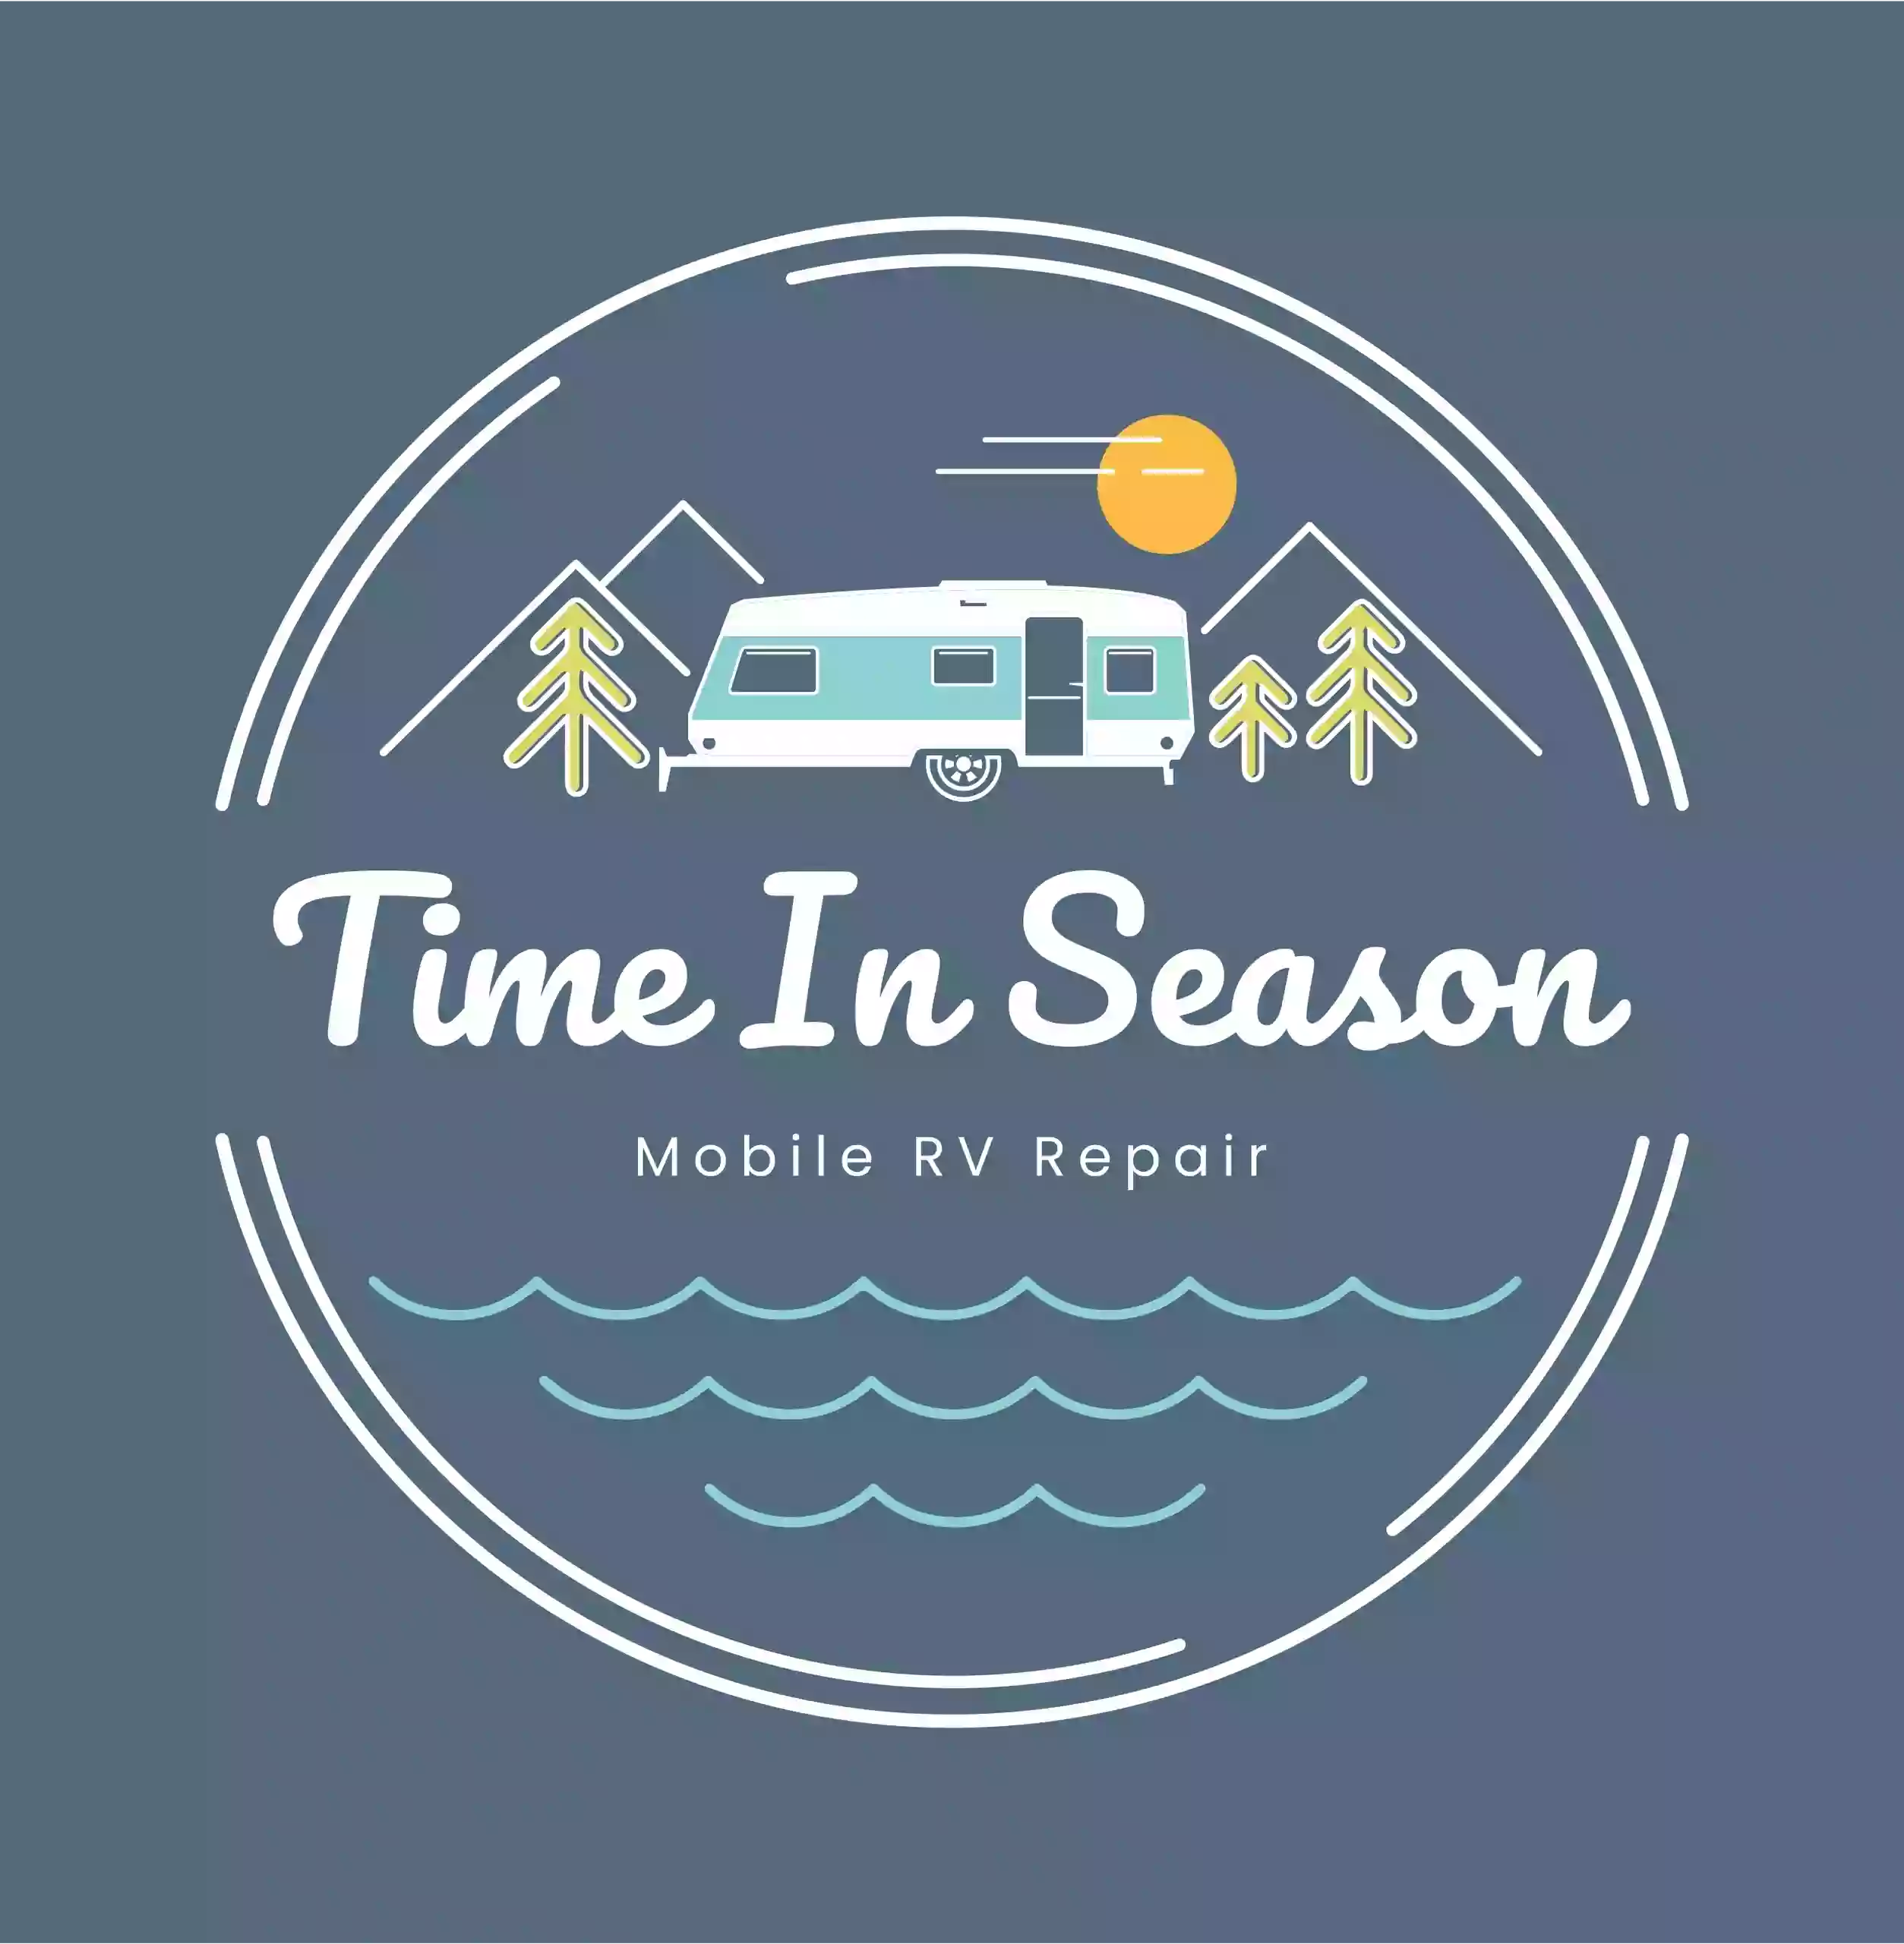 Time In Season Mobile RV Repair